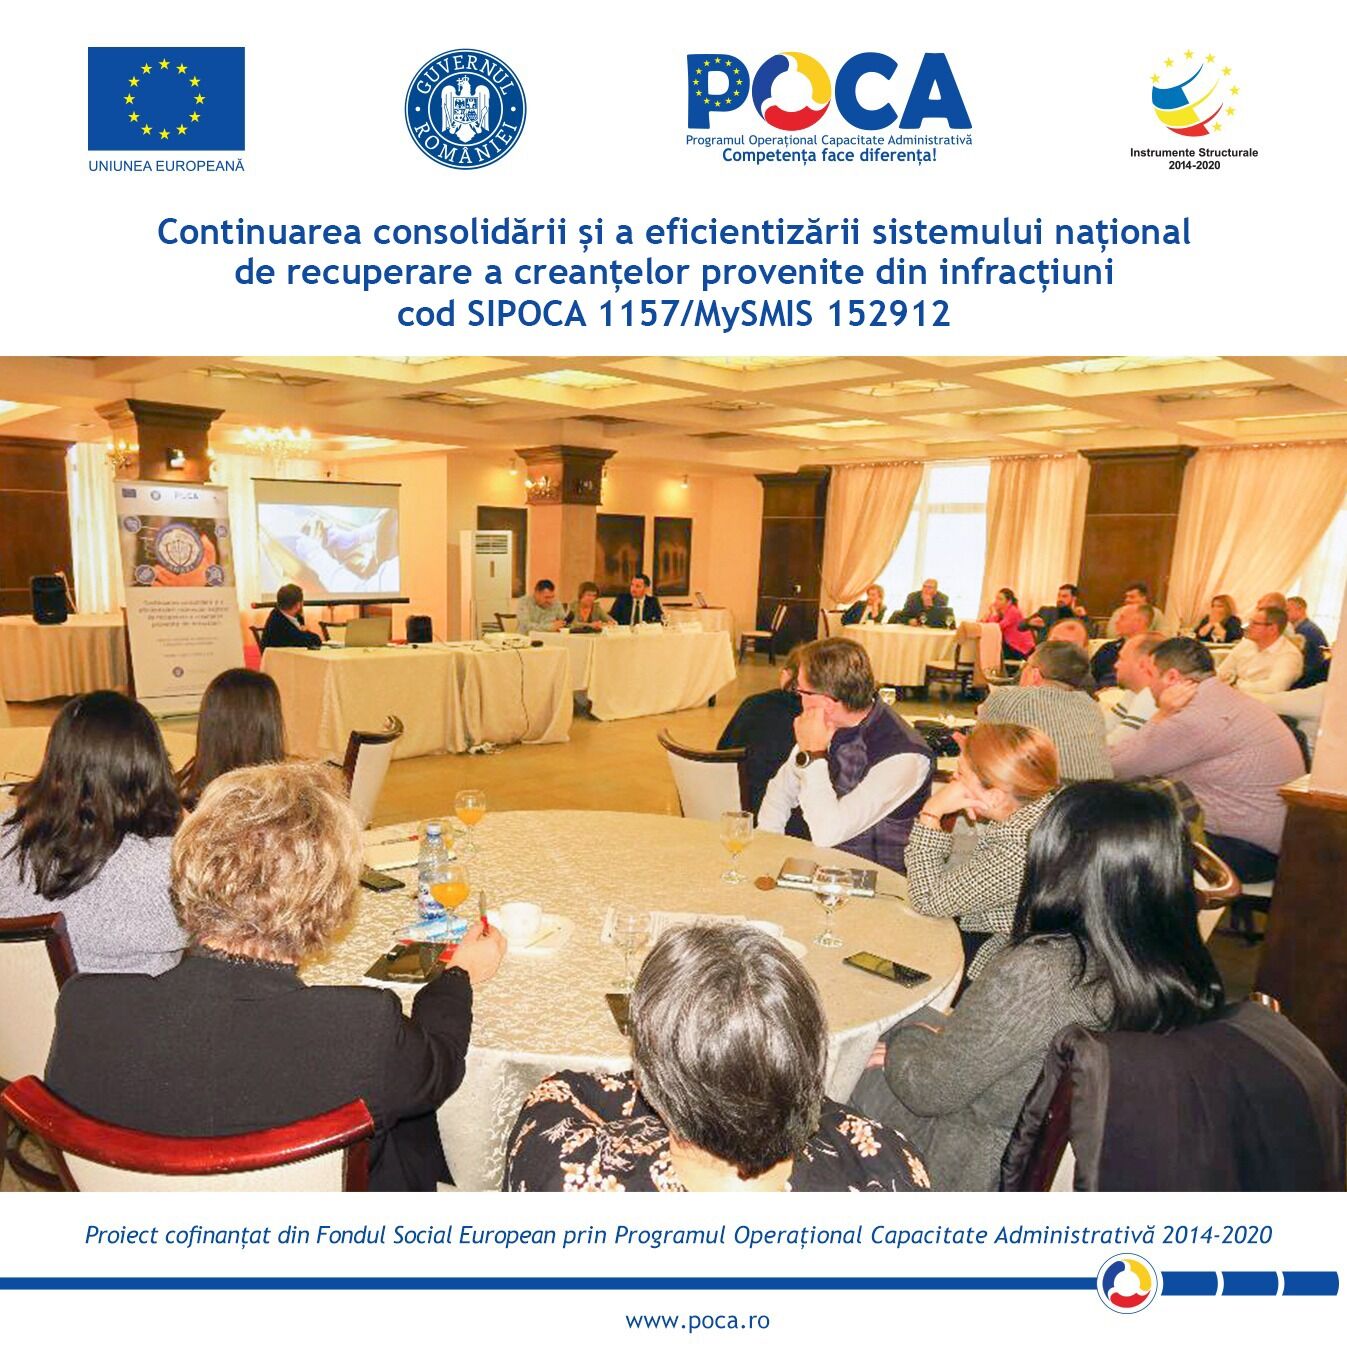 Conferința regională organizată la Suceava în cadrul proiectului „Continuarea consolidării și a eficientizării sistemului național de recuperare a creanțelor provenite din infracțiuni” cod SIPOCA 1157, cod MySMIS 152912